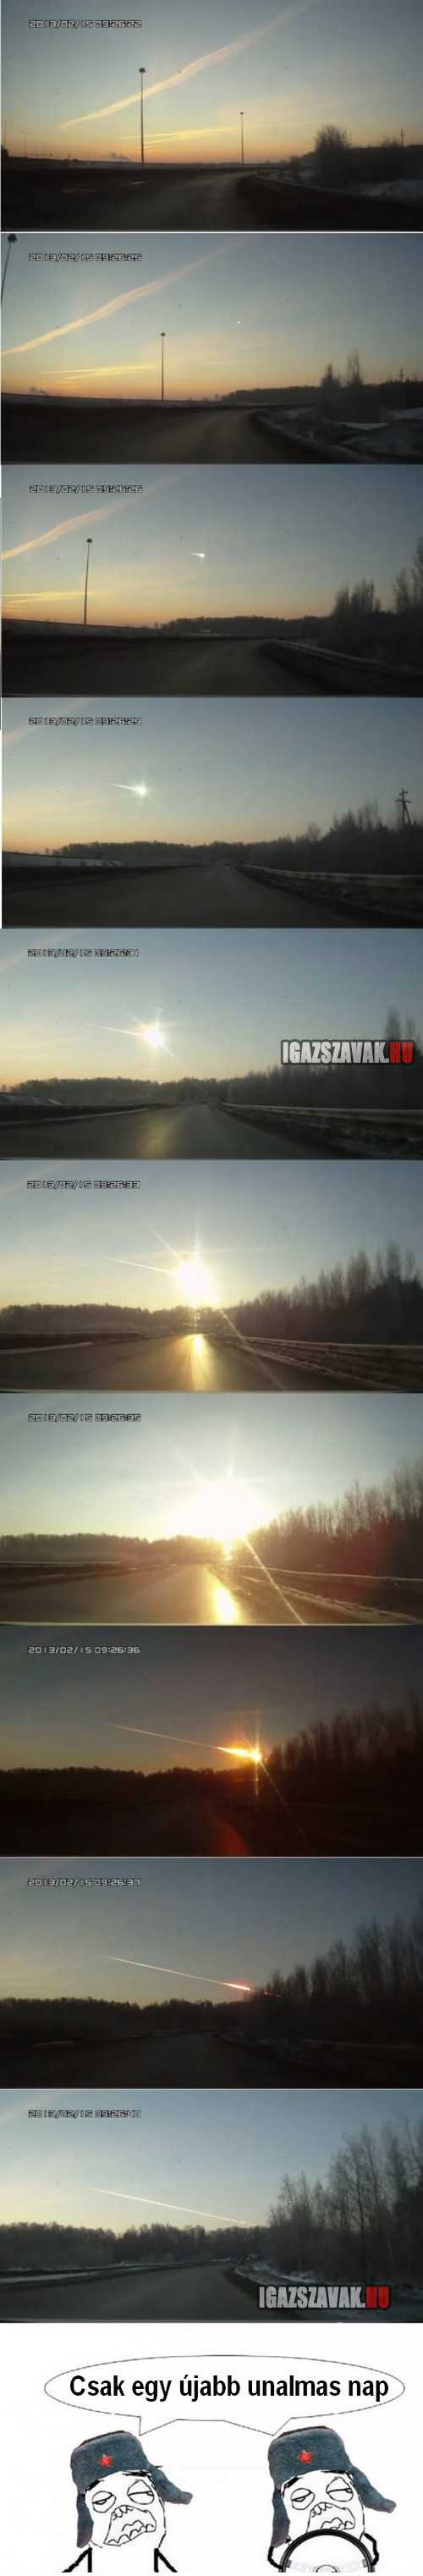 Oroszországban egy újab meteoritos nap